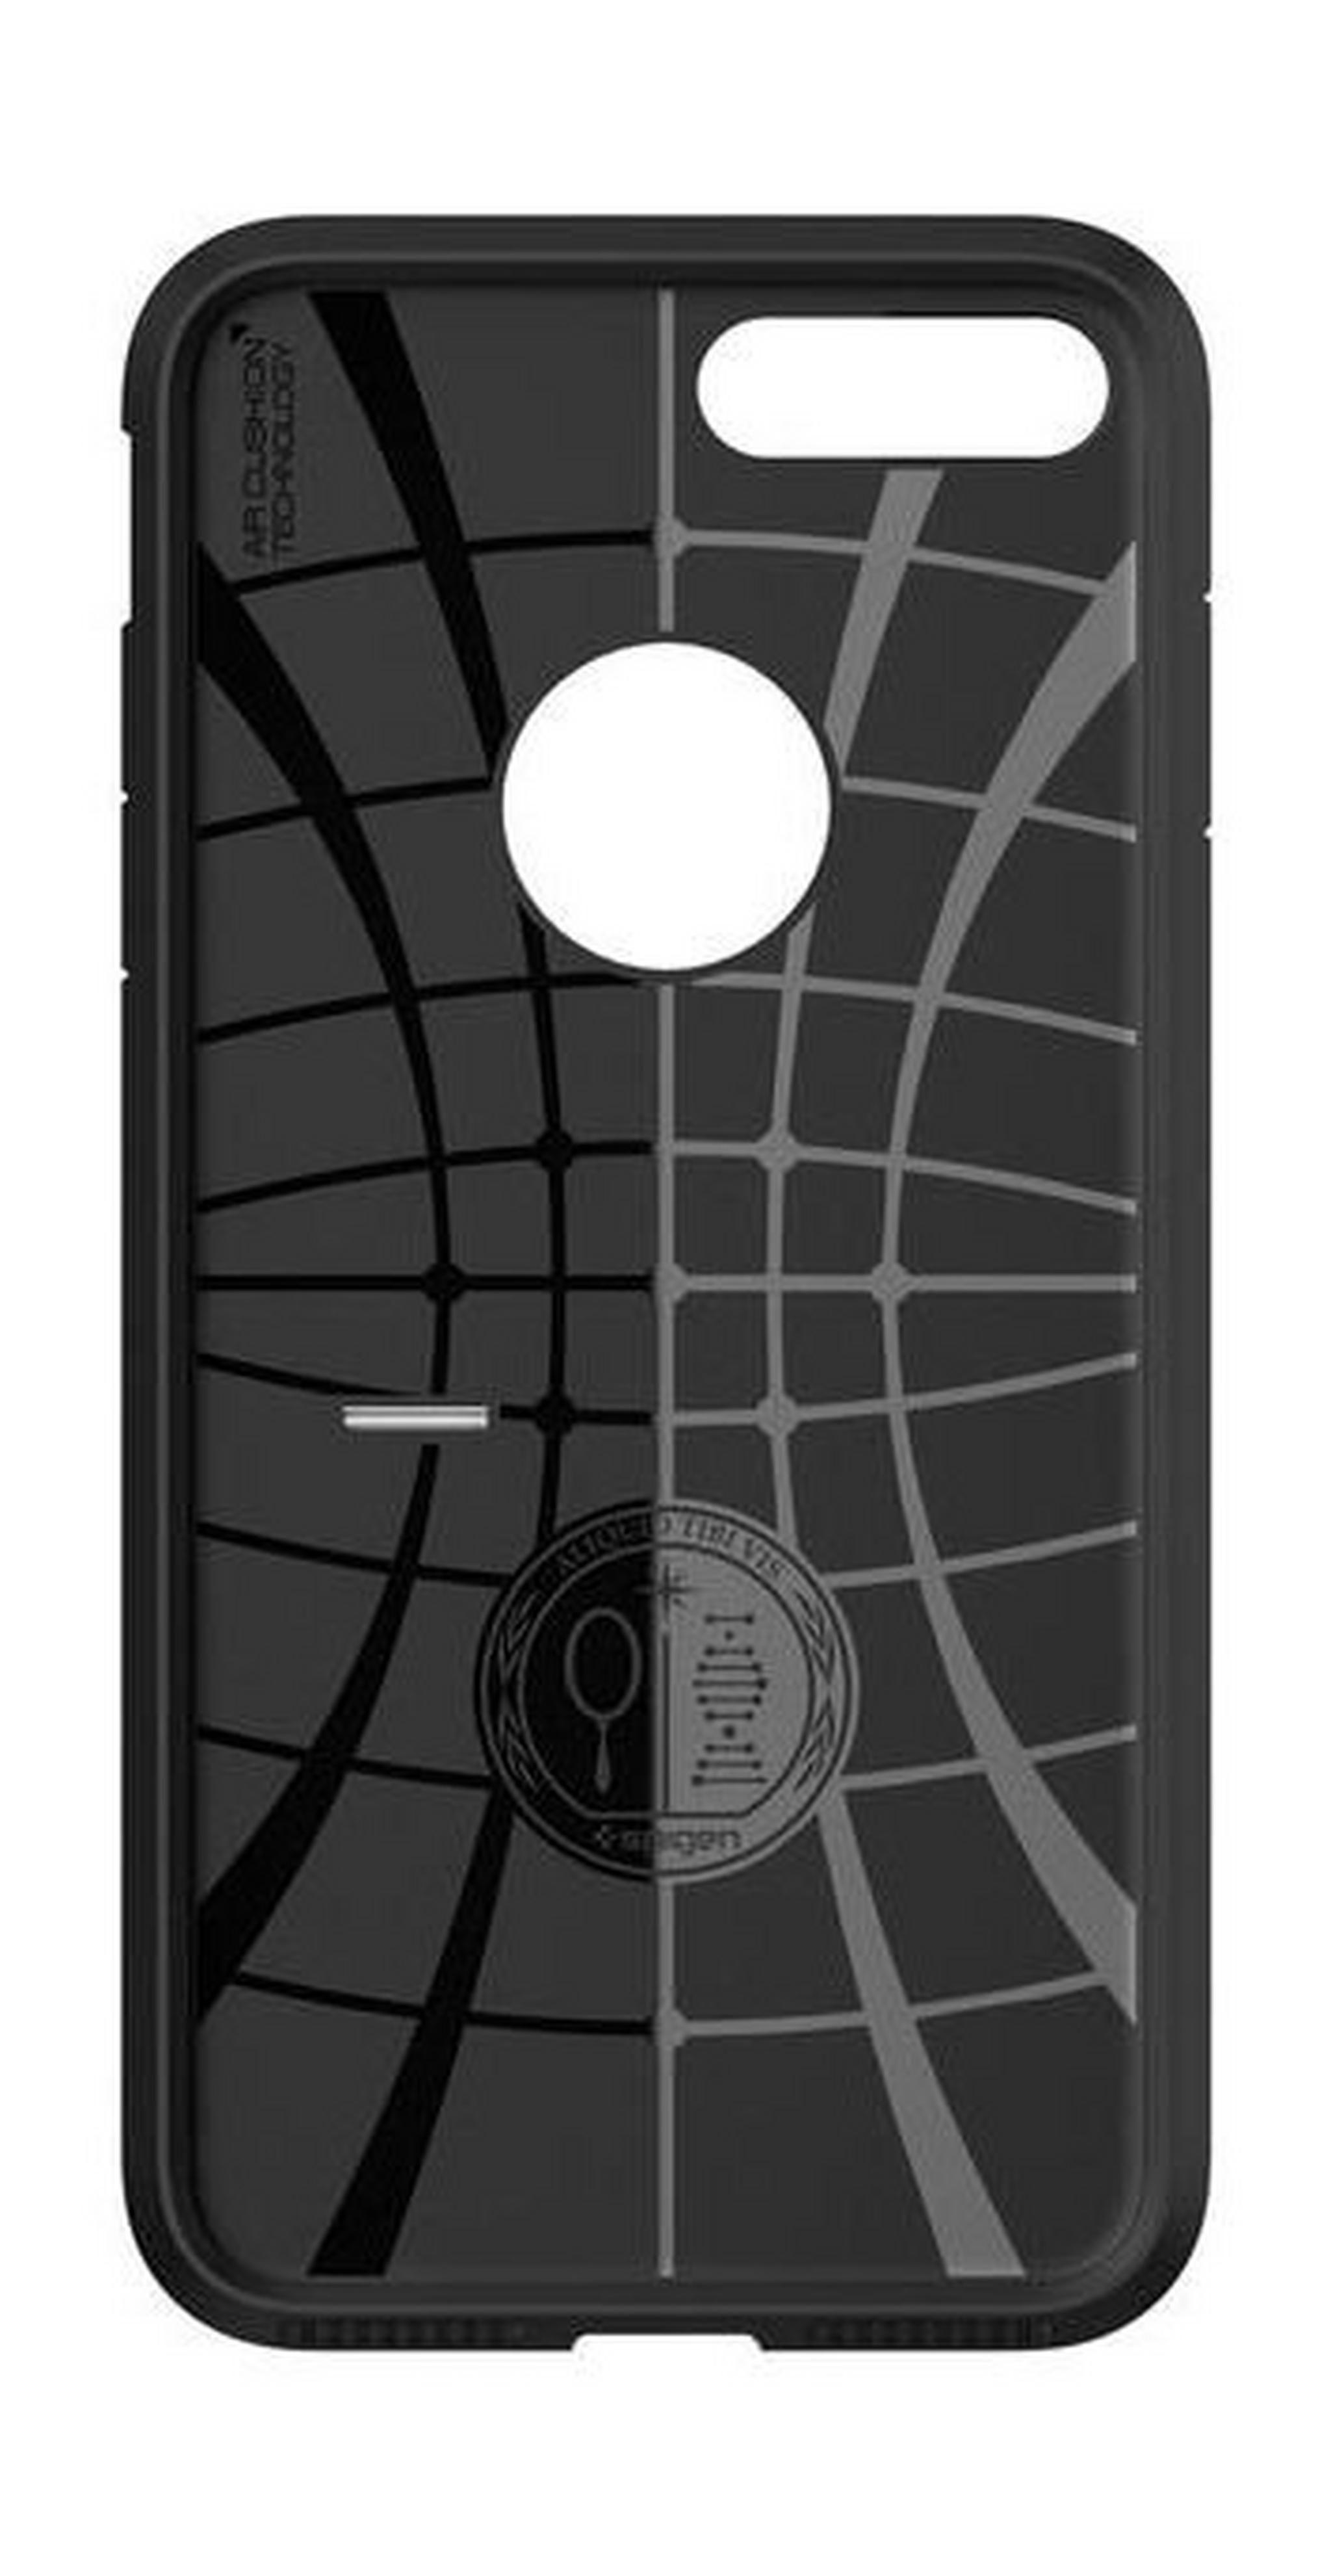 Spigen Tough Armor Protective Case for iPhone 7 (042CS20491) - Black